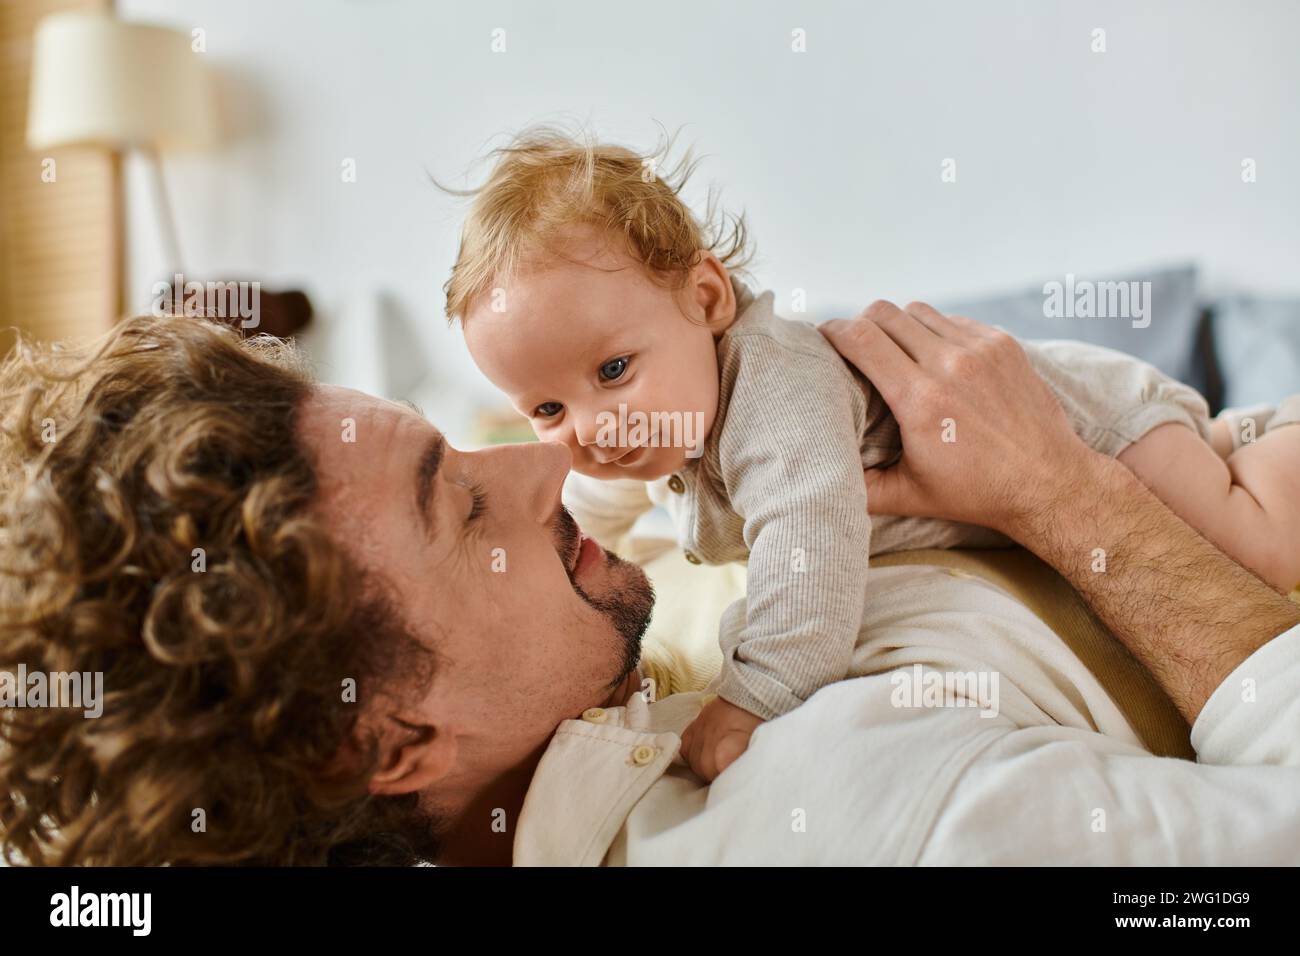 Glücklicher Mann mit lockigen Haaren und Bart, der sich mit seinem kleinen Sohn im Schlafzimmer umschließt, Liebe und Pflege Stockfoto